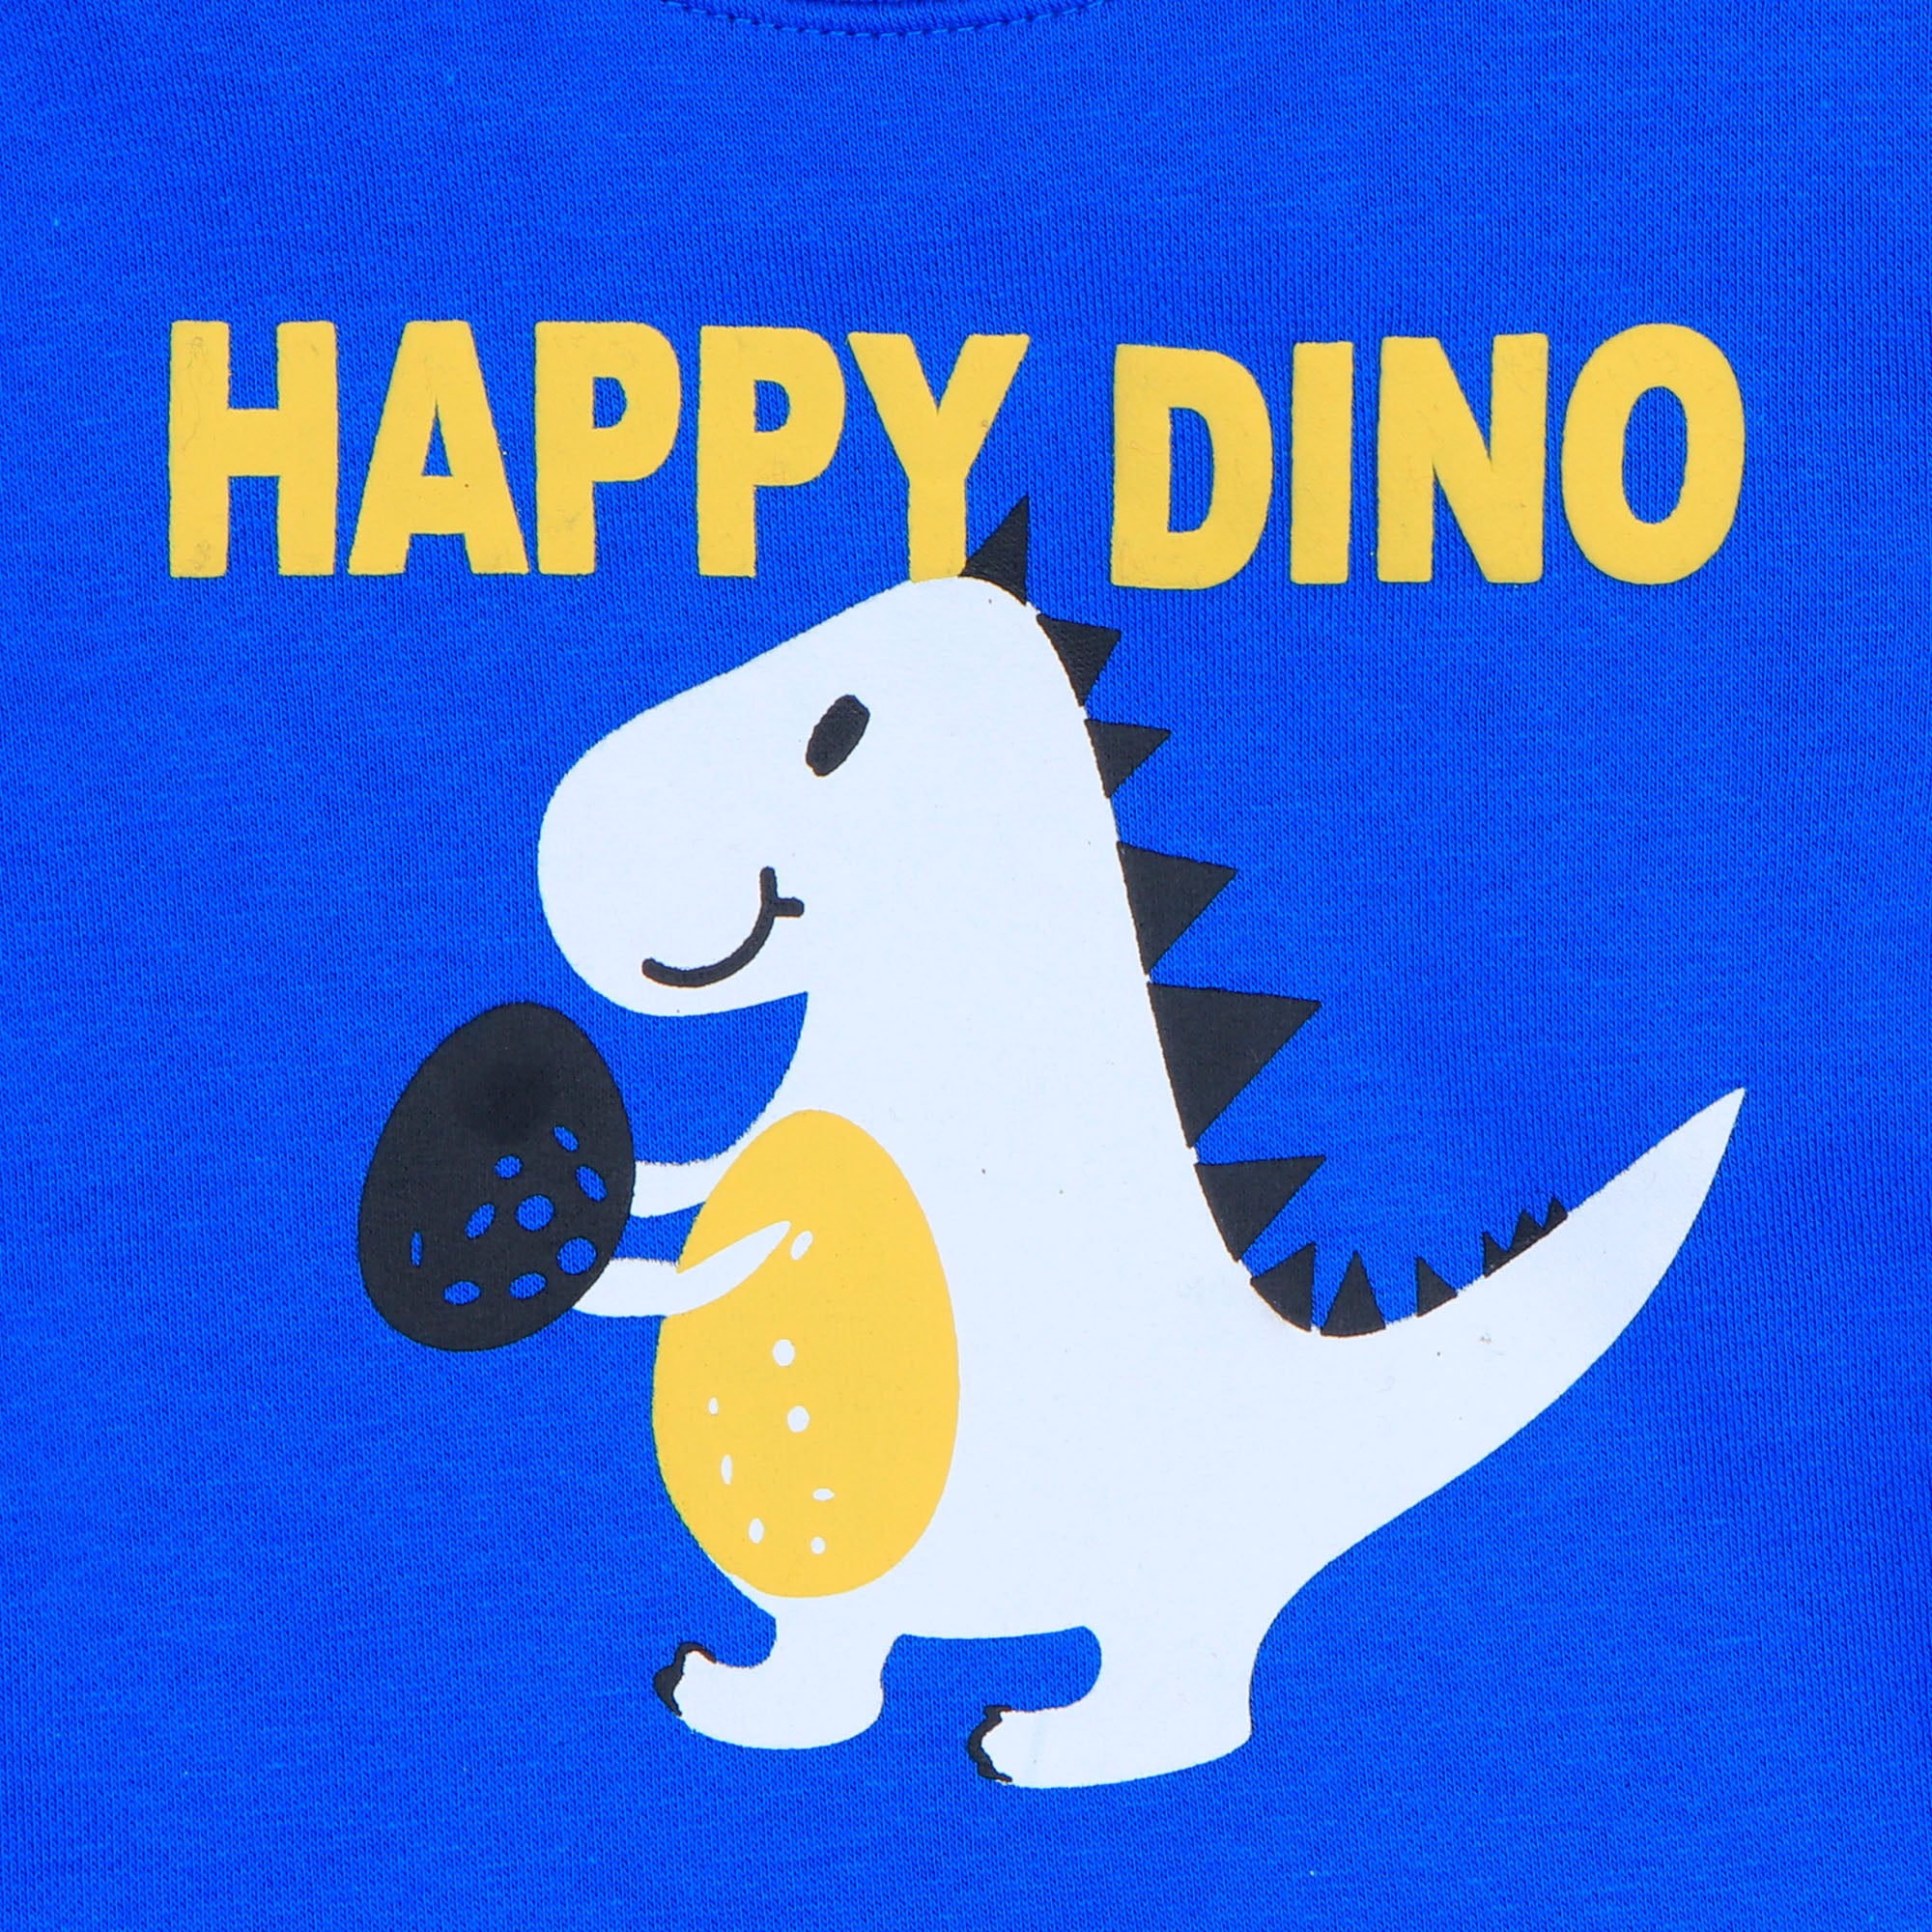 Happy Dino 2 Pc SweatSuit